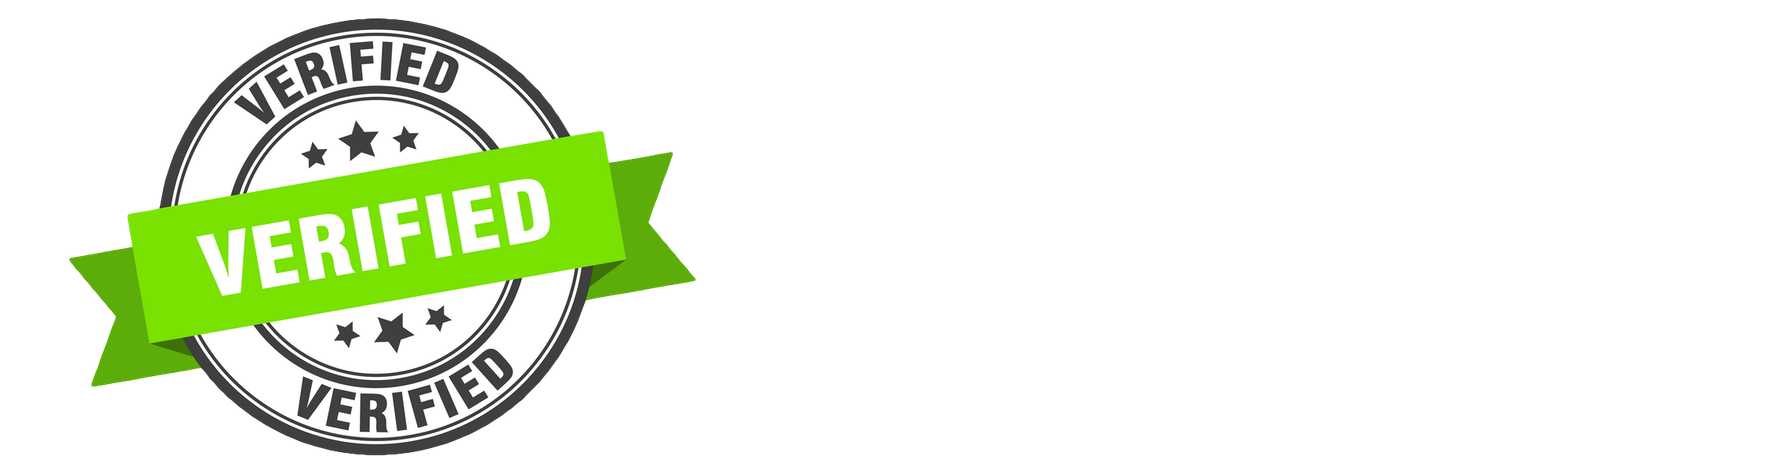 authentic_reviews